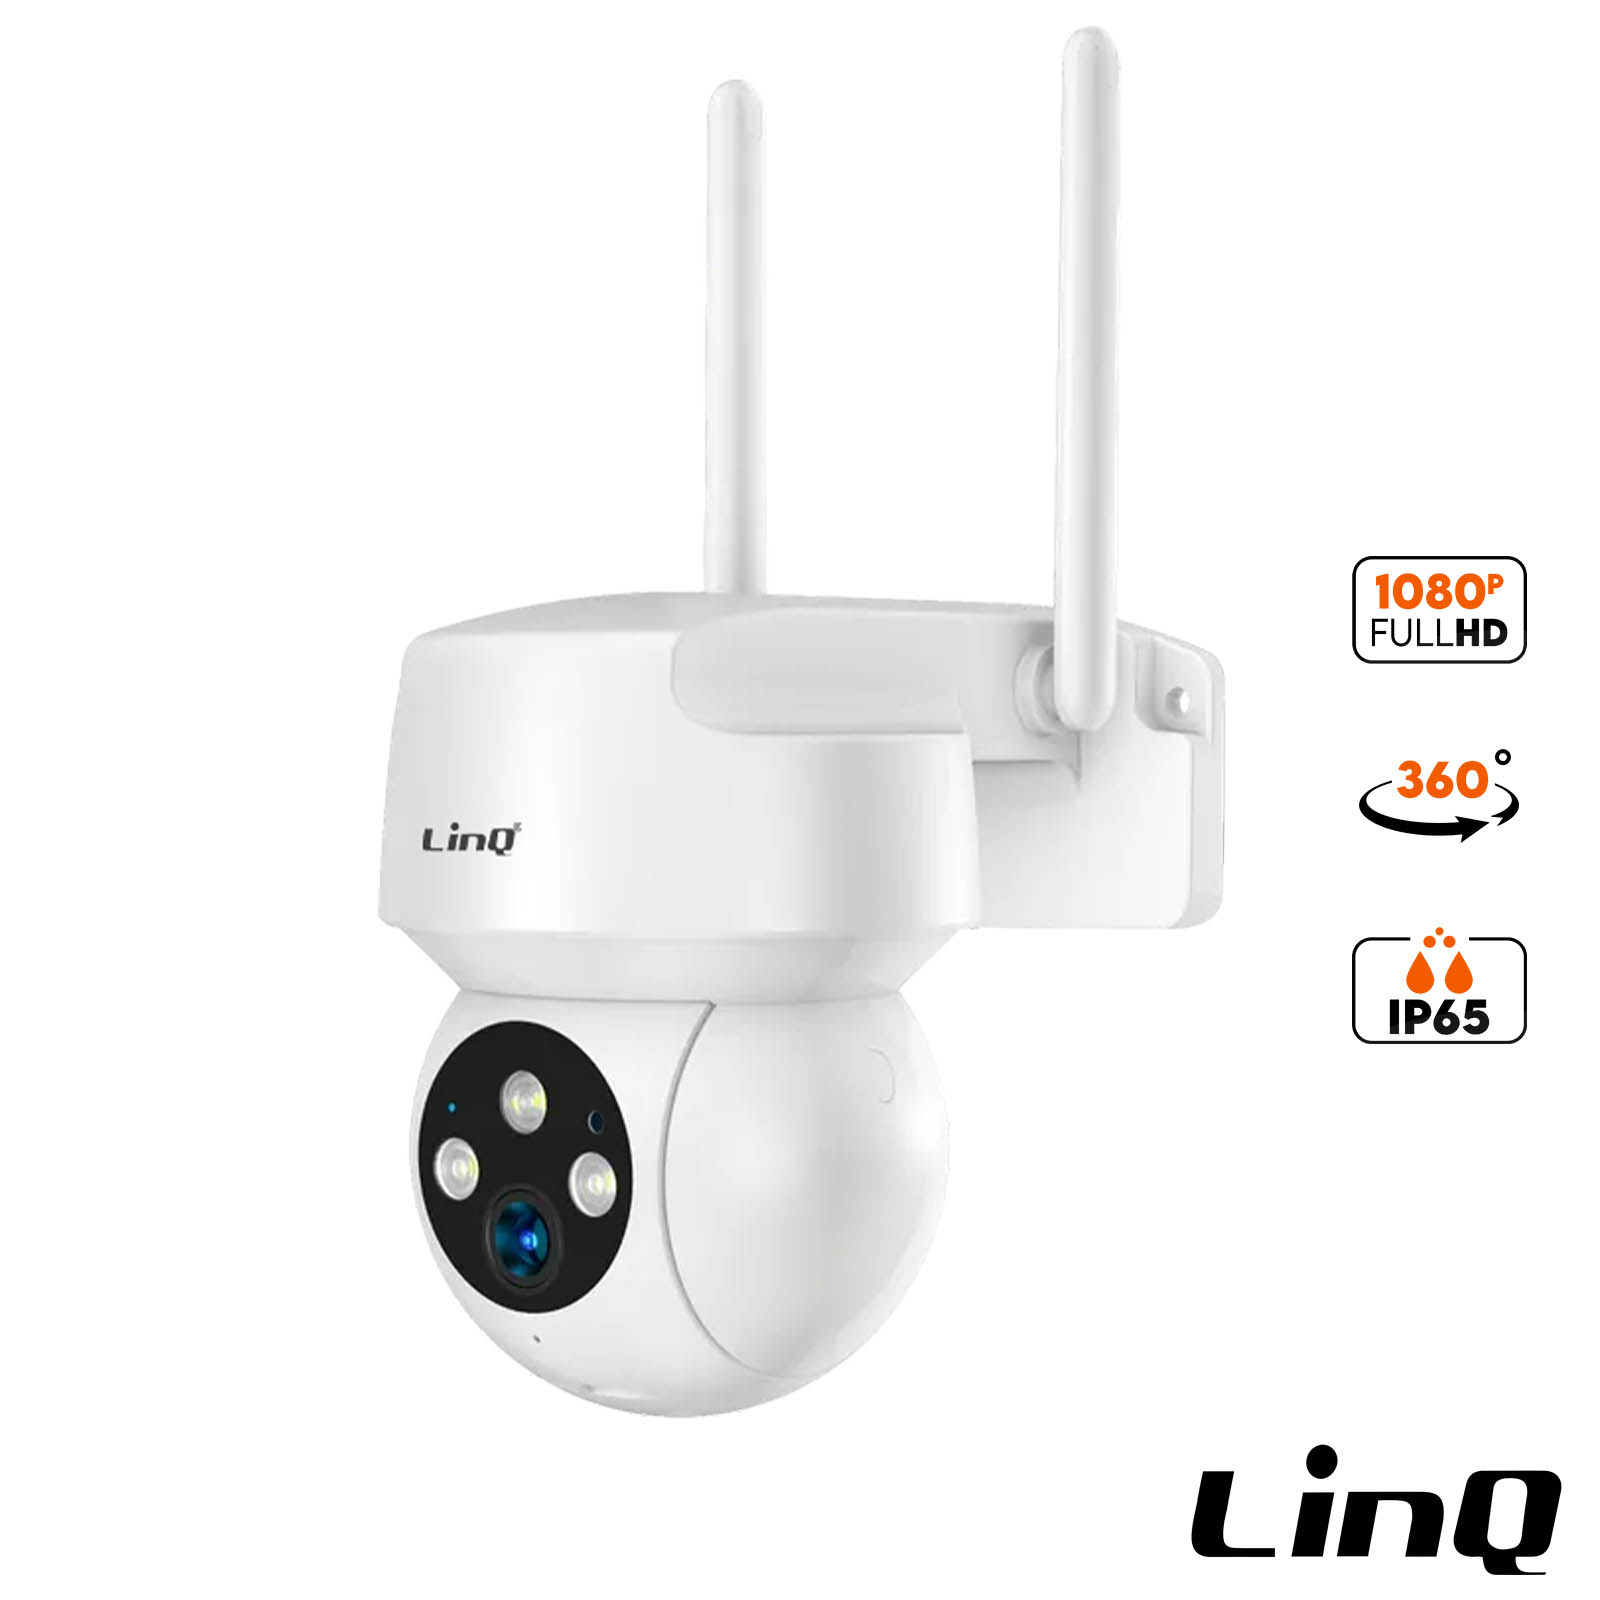 Caméra de surveillance sans fil Full HD 1080p, Étanche IP65, LinQ